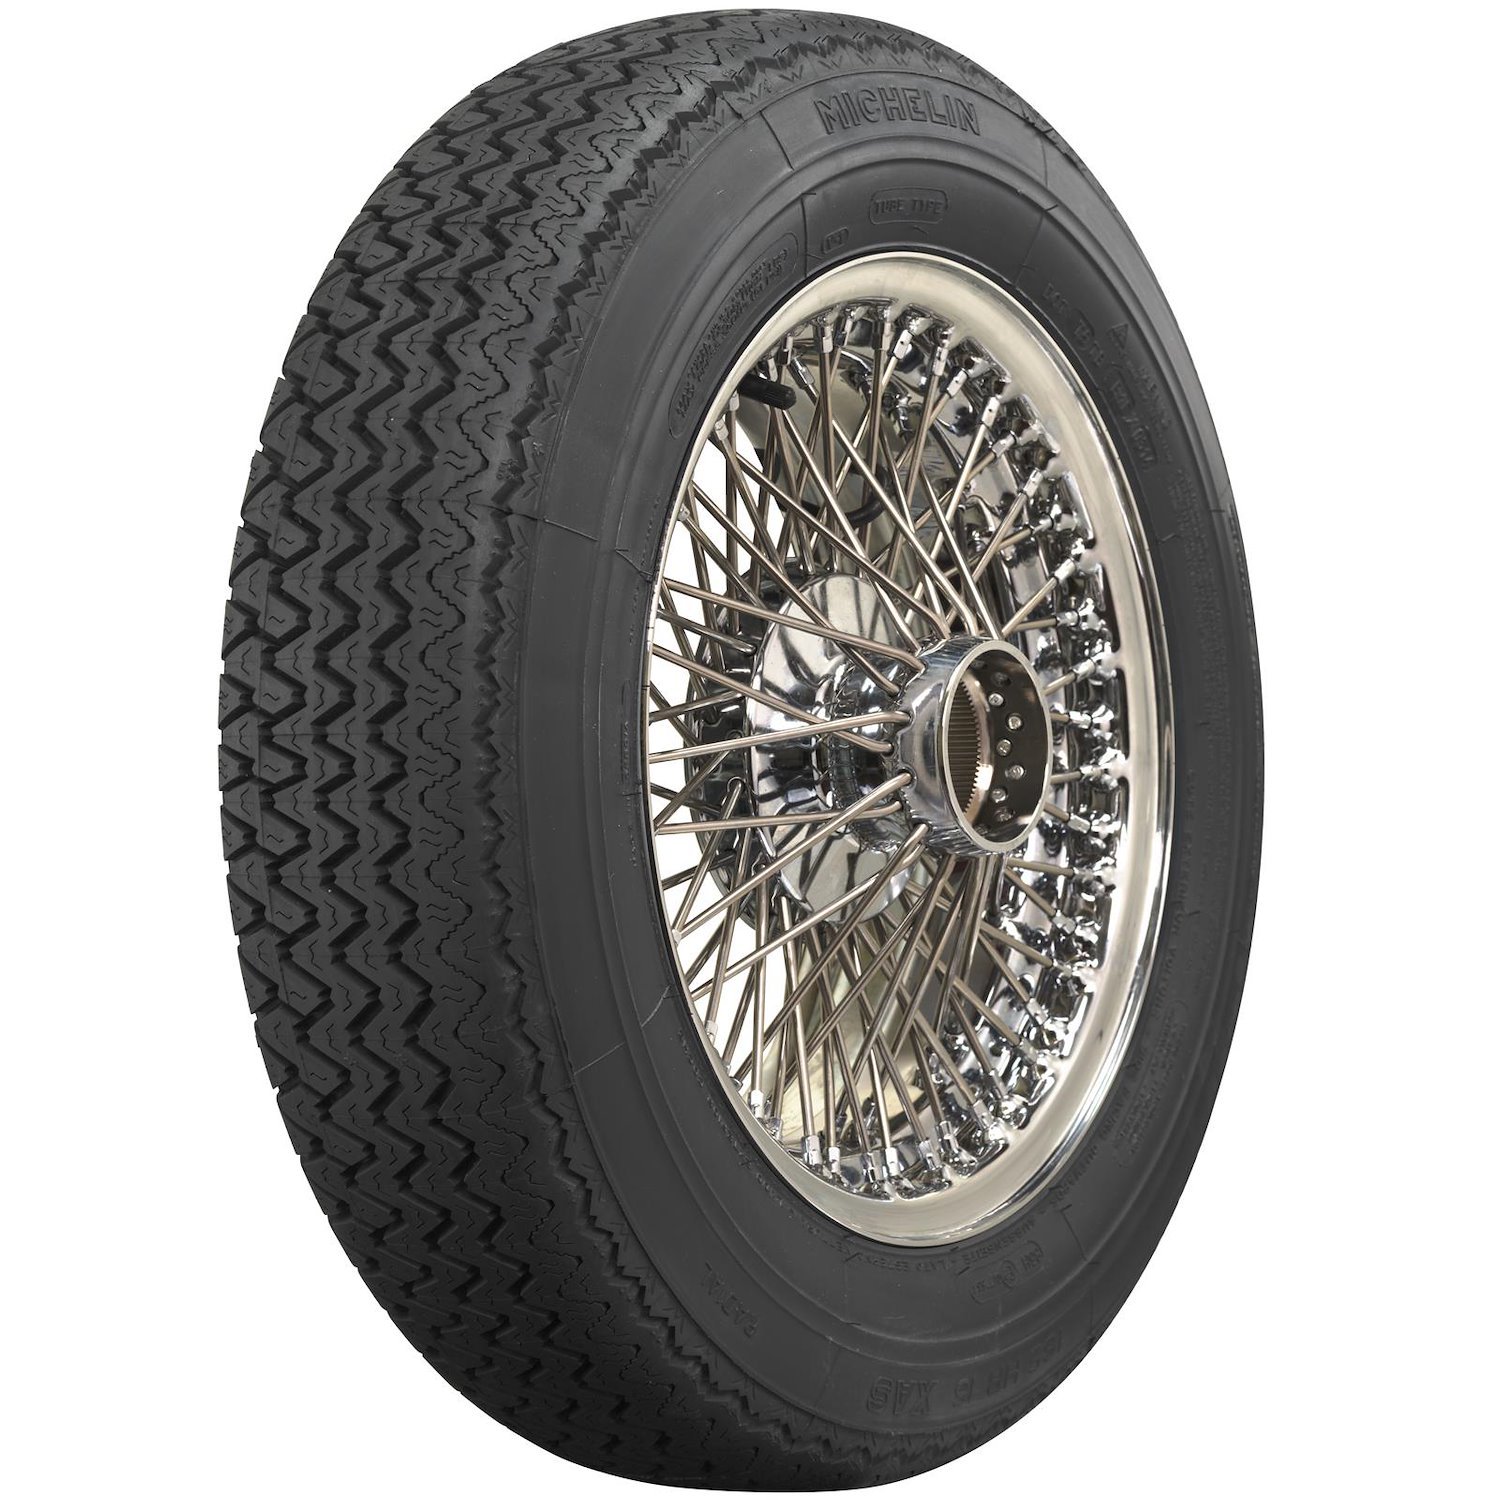 56051 Tire, Michelin XAS, 155HR15 82H